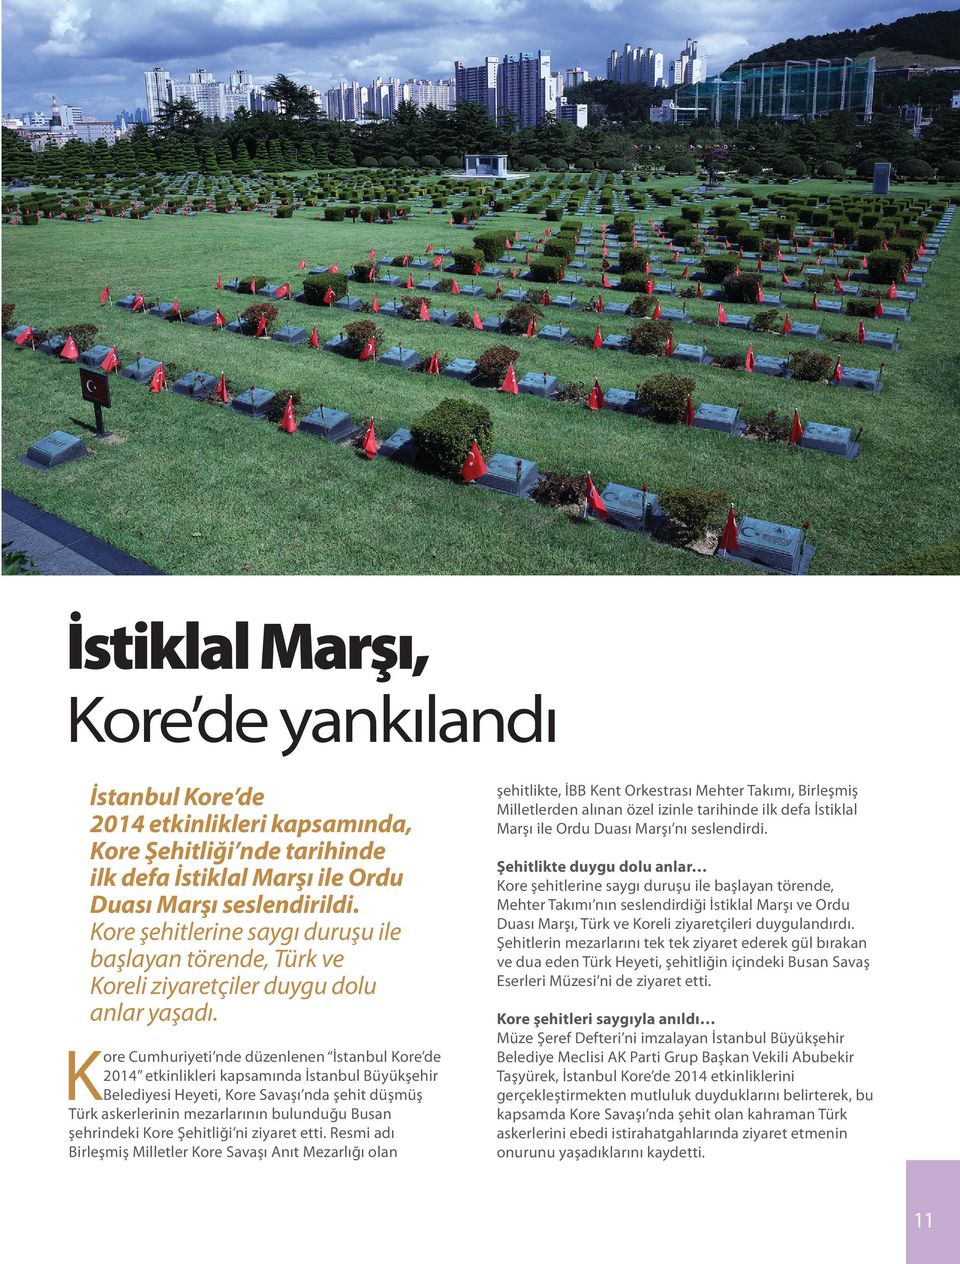 K ore Cumhuriyeti nde düzenlenen İstanbul Kore de 2014 etkinlikleri kapsamında İstanbul Büyükşehir Belediyesi Heyeti, Kore Savaşı nda şehit düşmüş Türk askerlerinin mezarlarının bulunduğu Busan